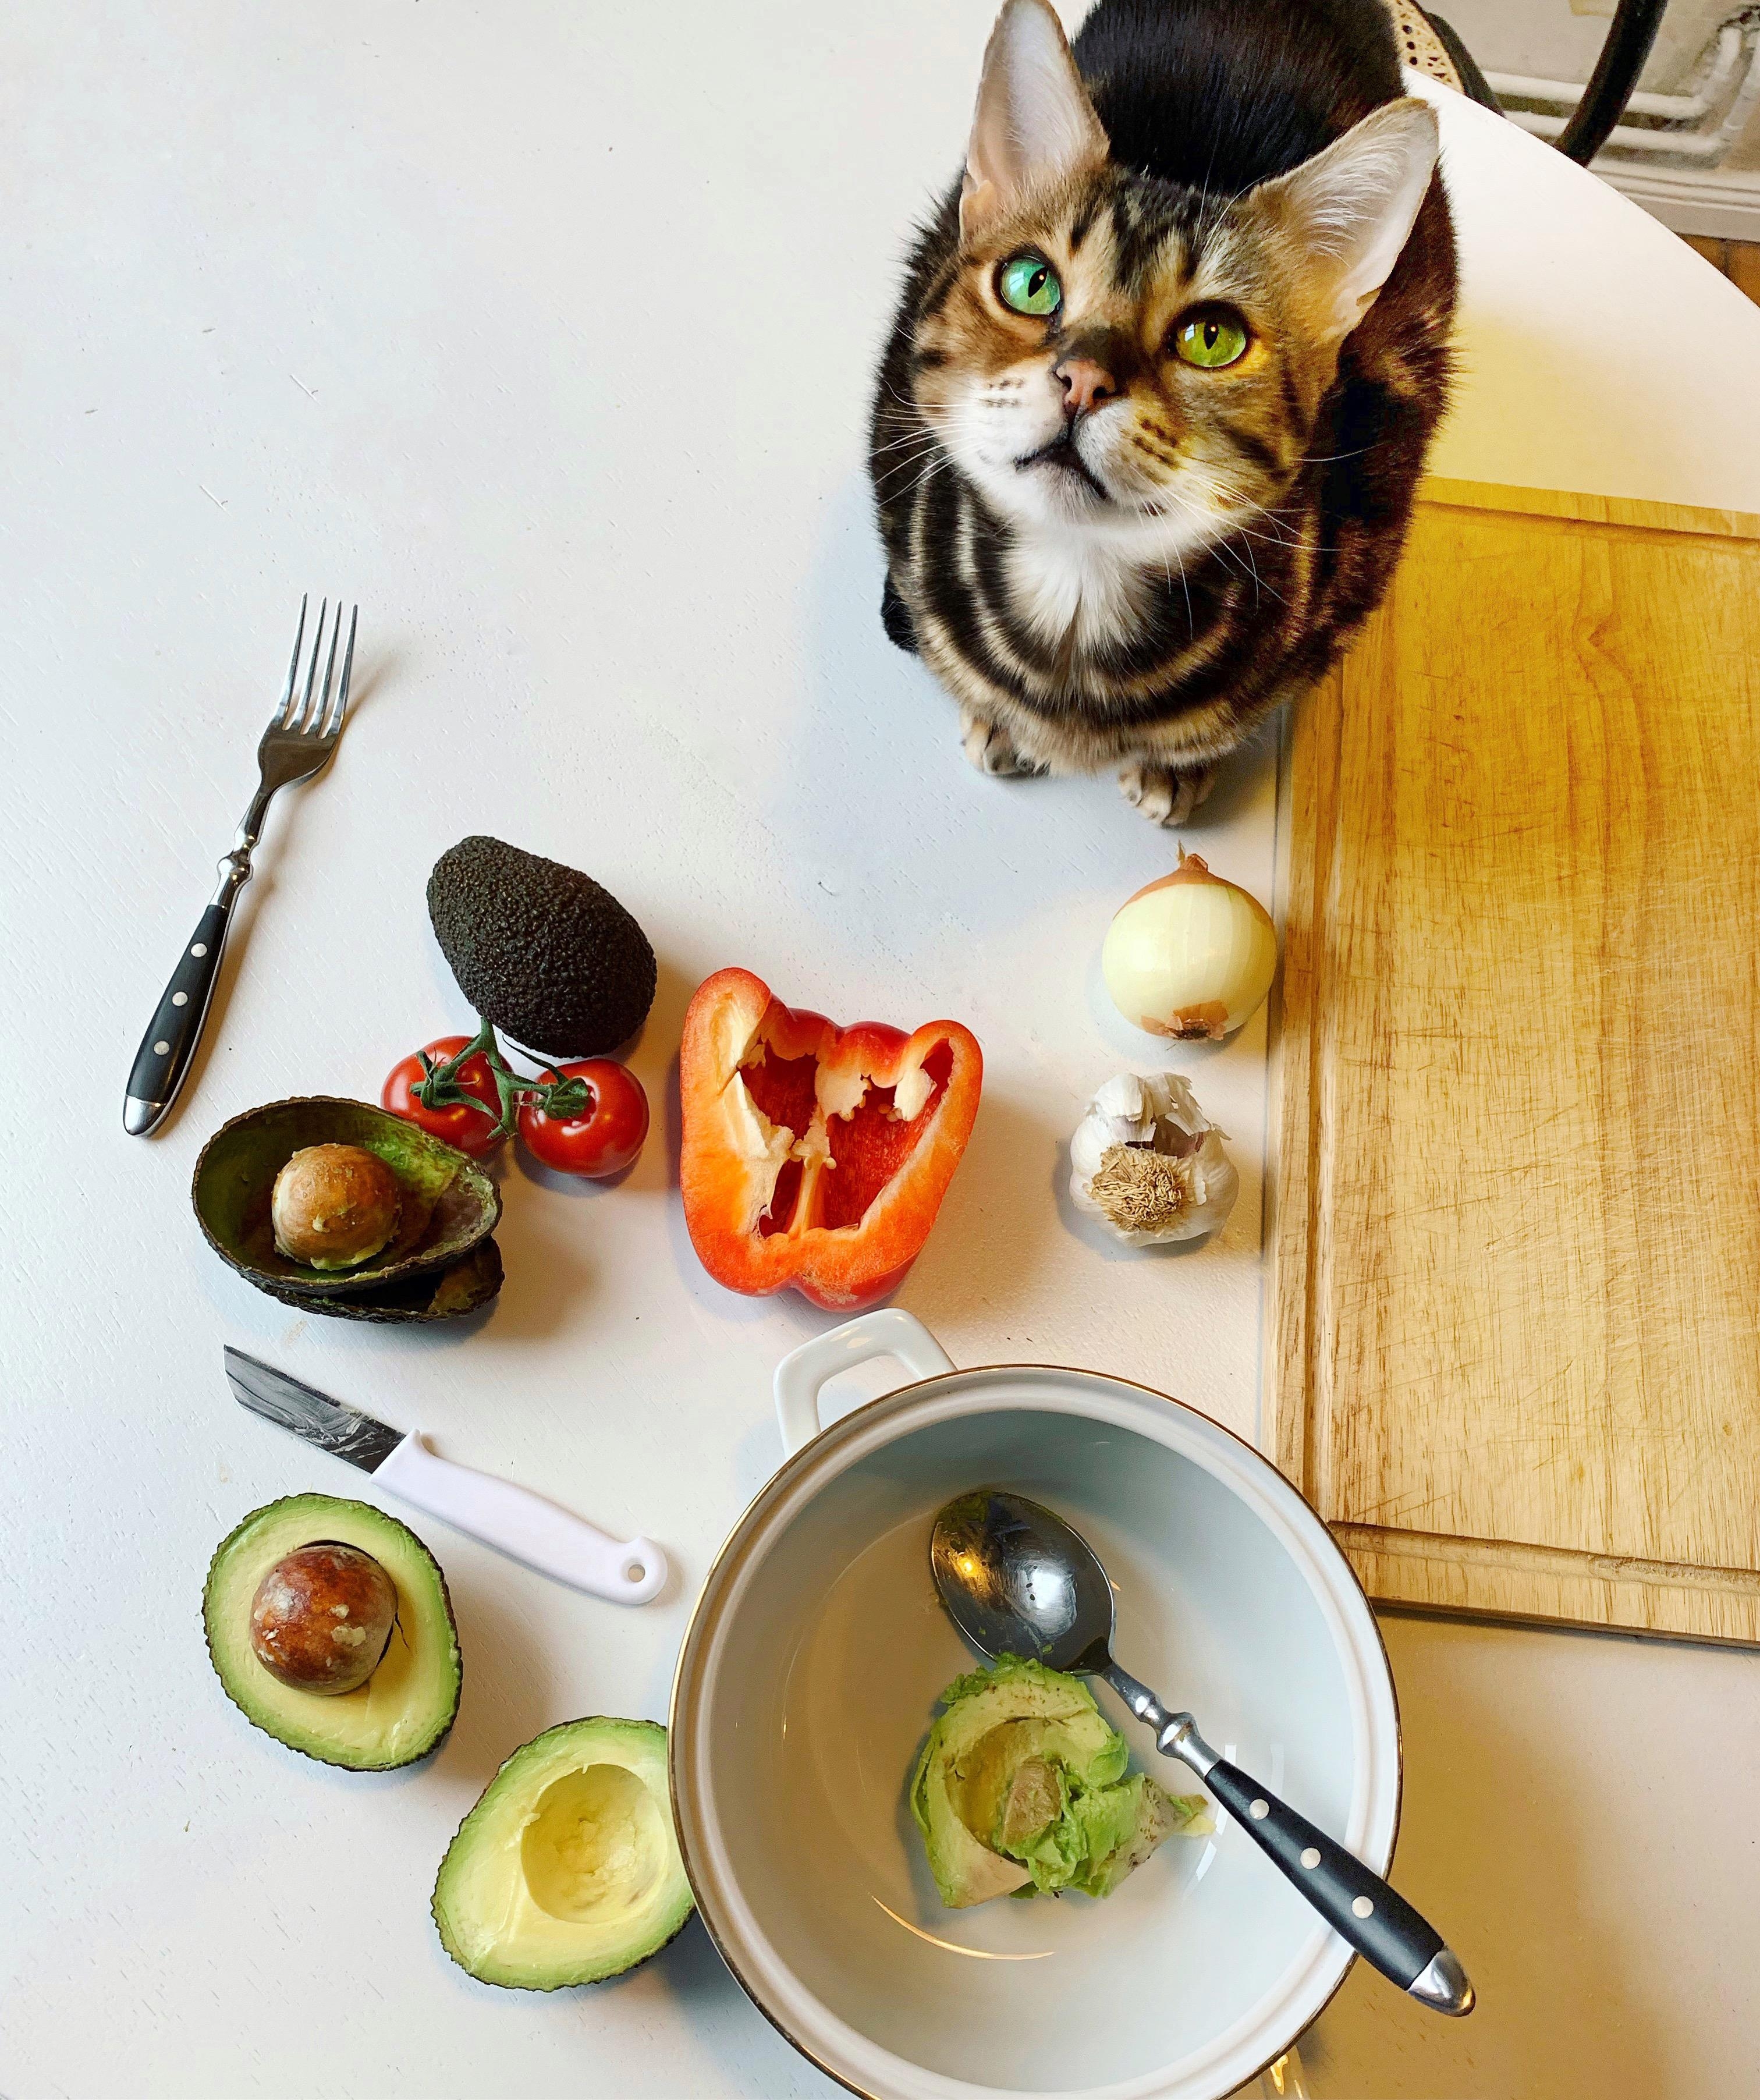 Gucatmole zum gesunden Start in die Woche! #Katze #Avocado